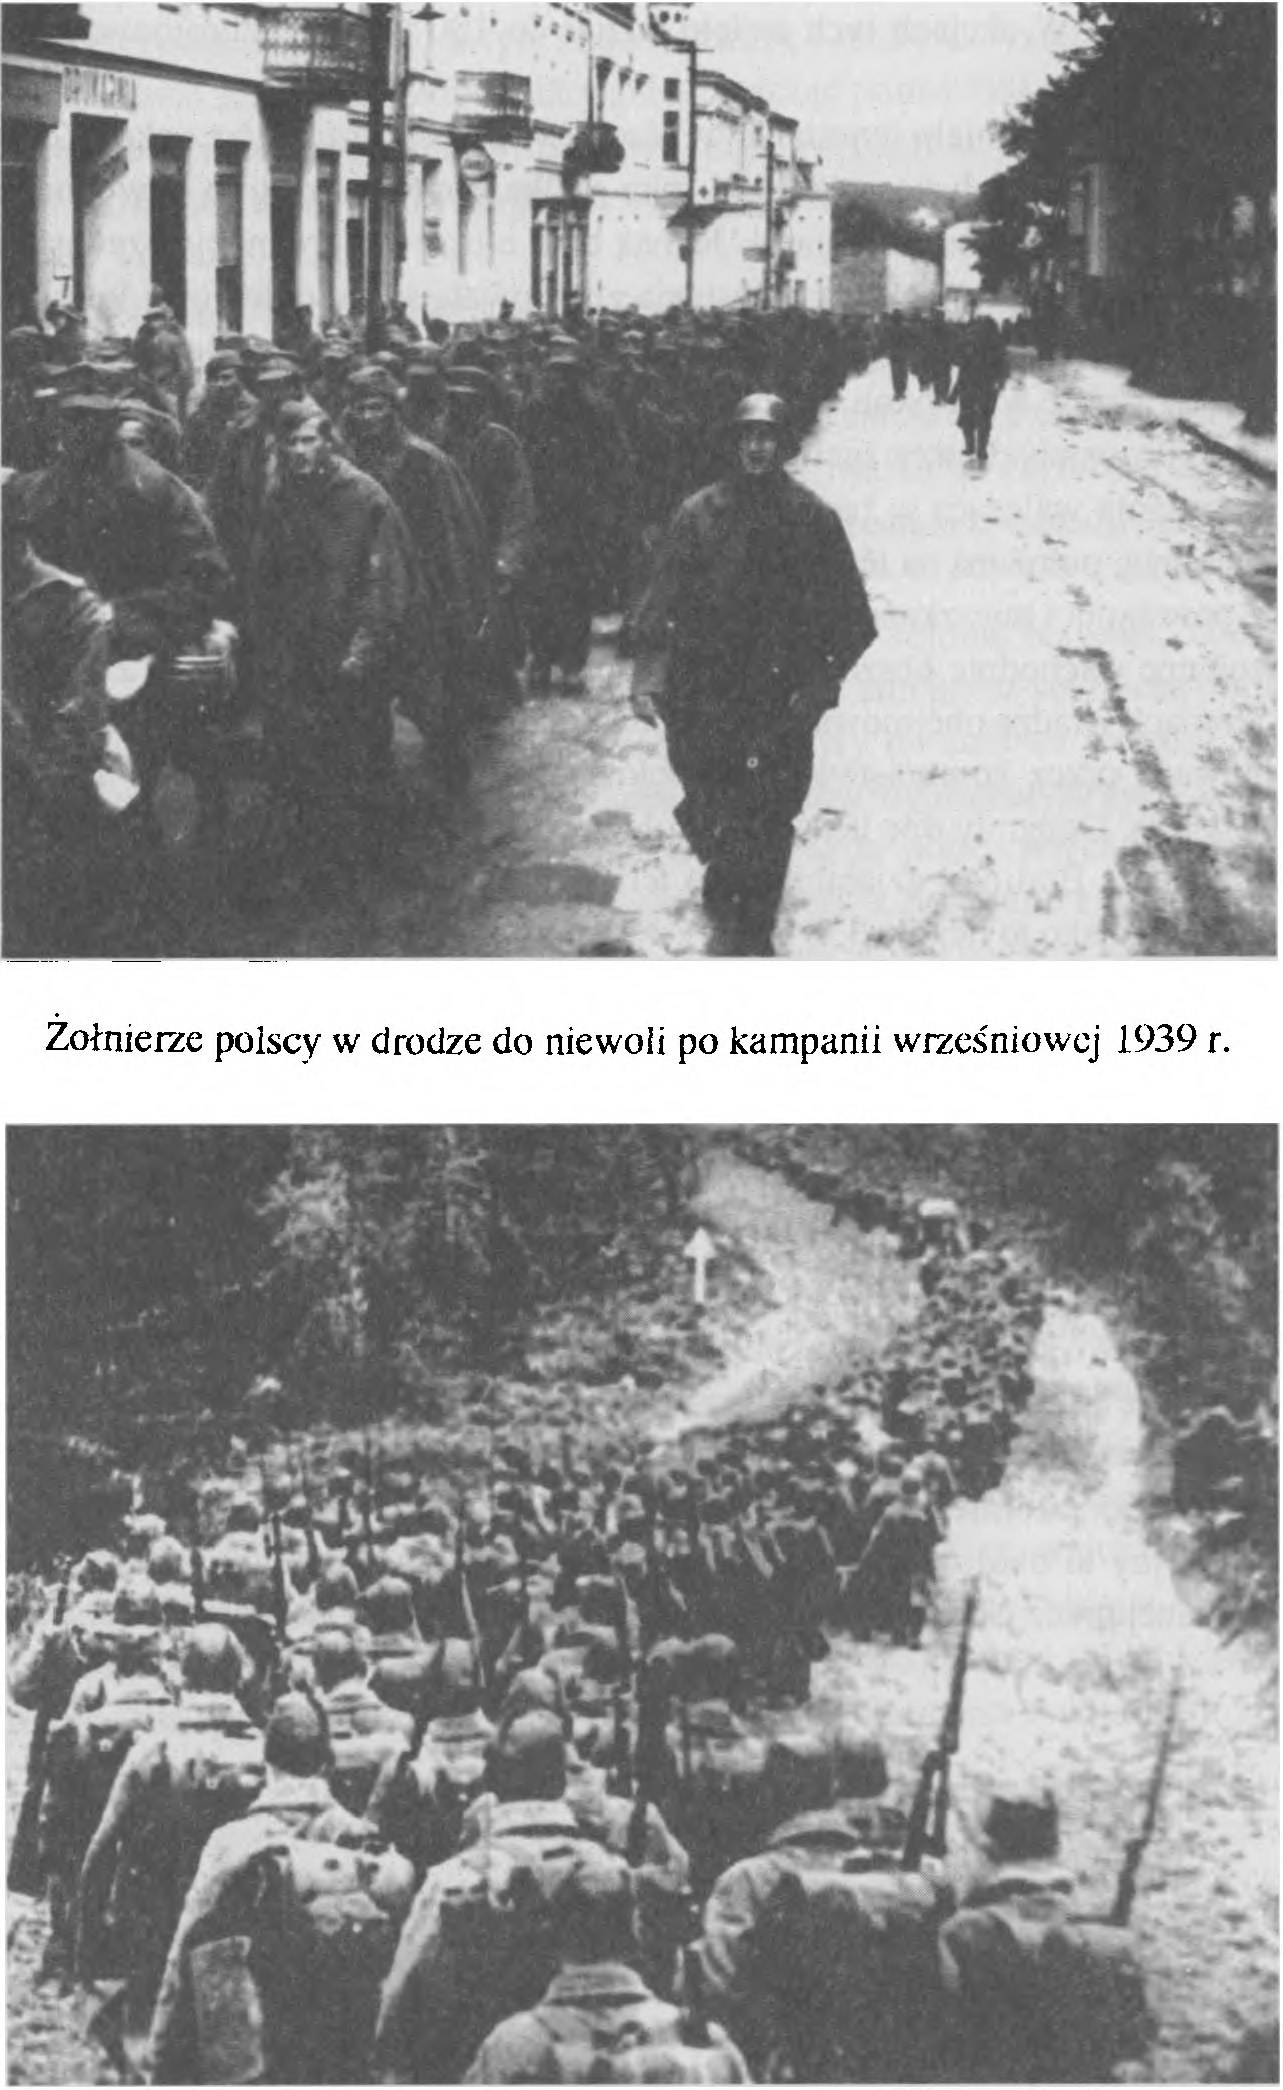 12 Andrzej Ajhenkiel Żołnierze polscy w drodze do niewoli po kampanii wrzes'niowej 1939 r.